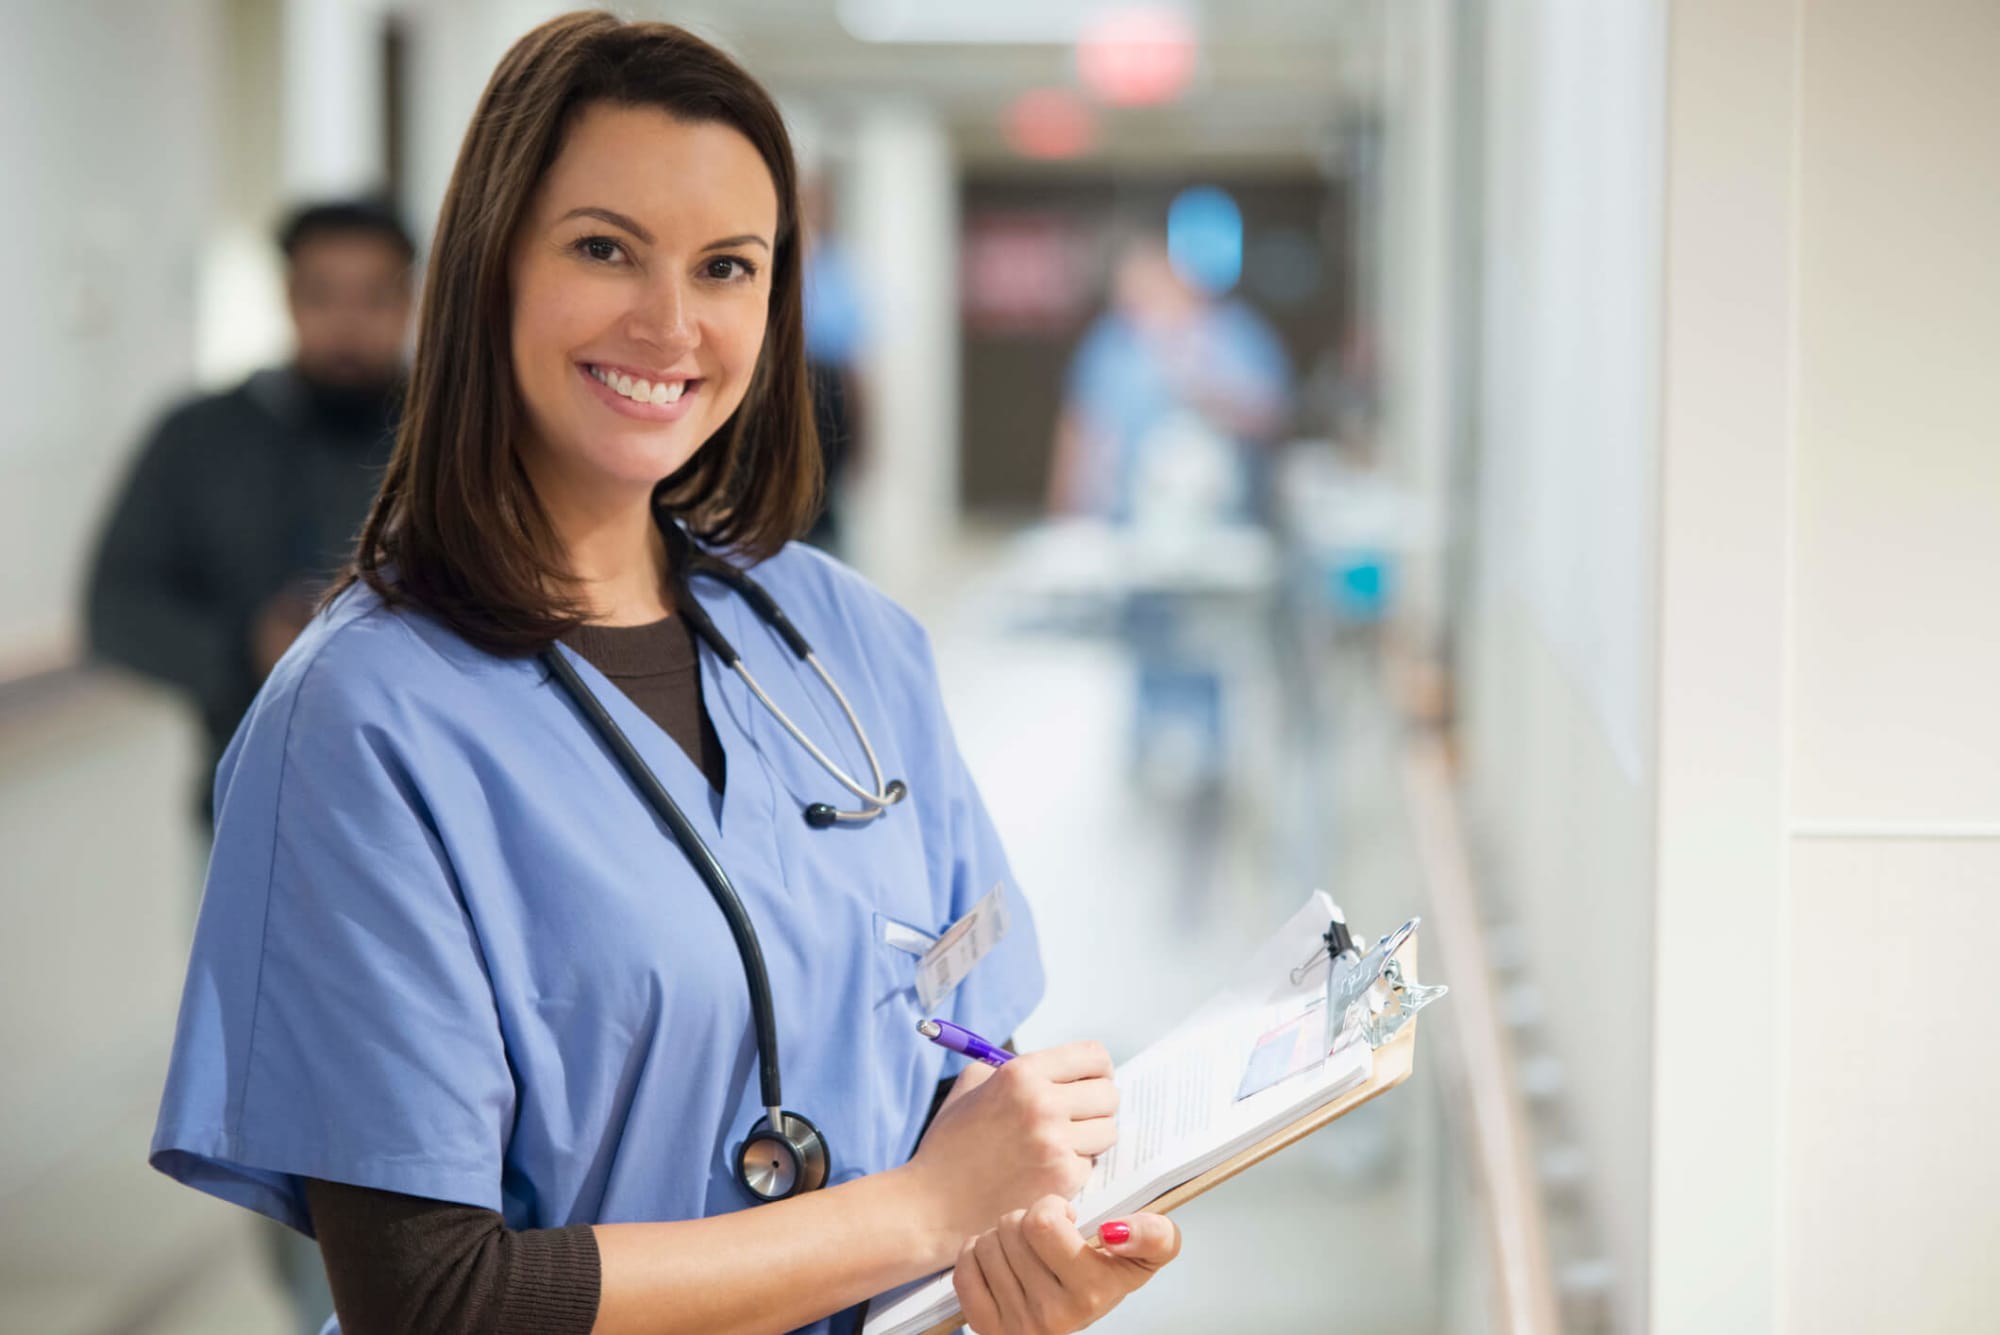 Medical Assistant to Registered Nurse